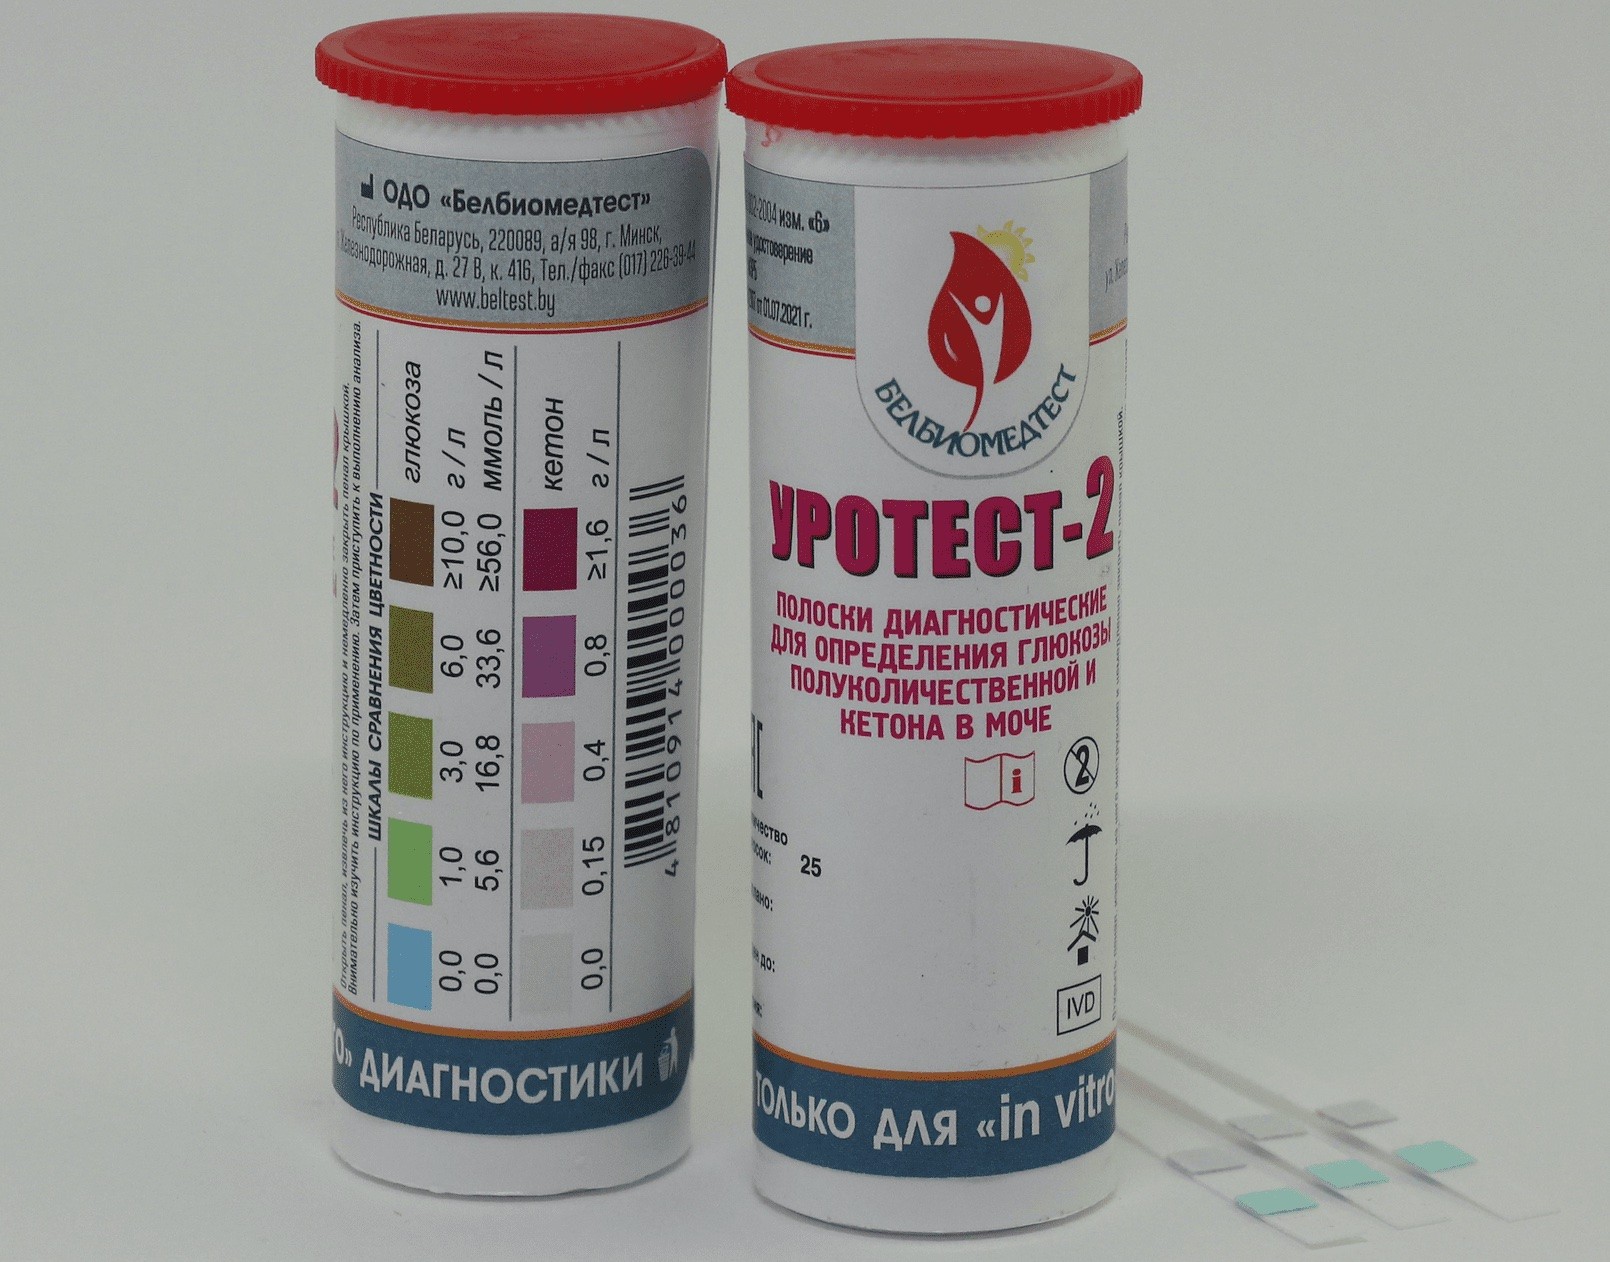 Полоски диагностические Уротест-2 для определения глюкозы полуколичественной и кетона в моче